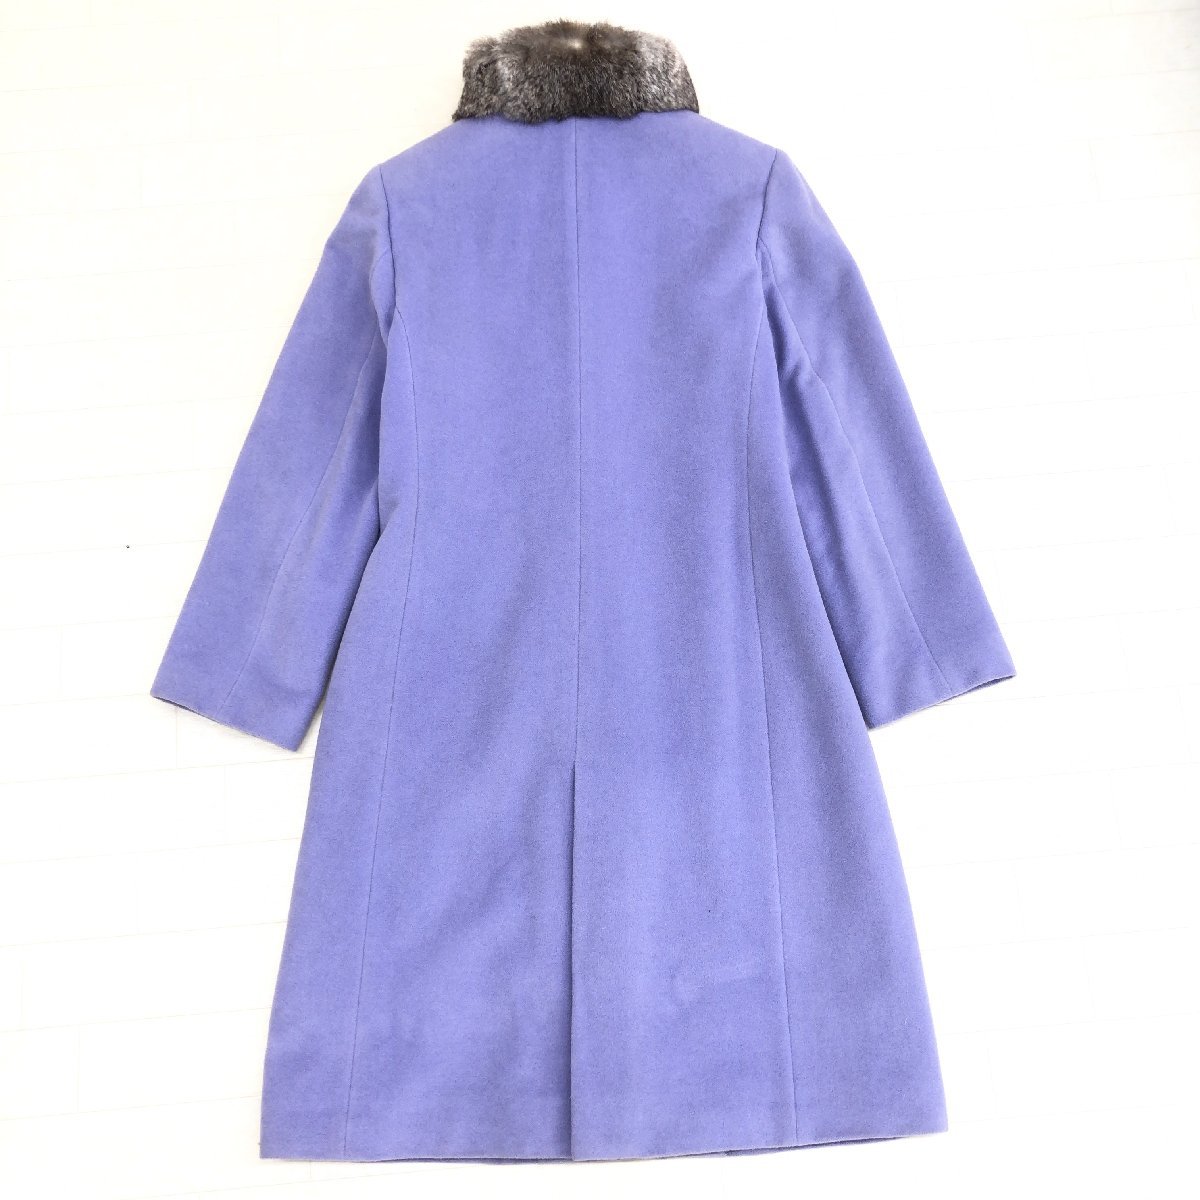 ◆CINQ SEPT UN サンクセタン ラビットファー スタンドカラー アンゴラウール ロングコート 11(L) 淡紫 ライトパープル 東京スタイル 婦人_画像2